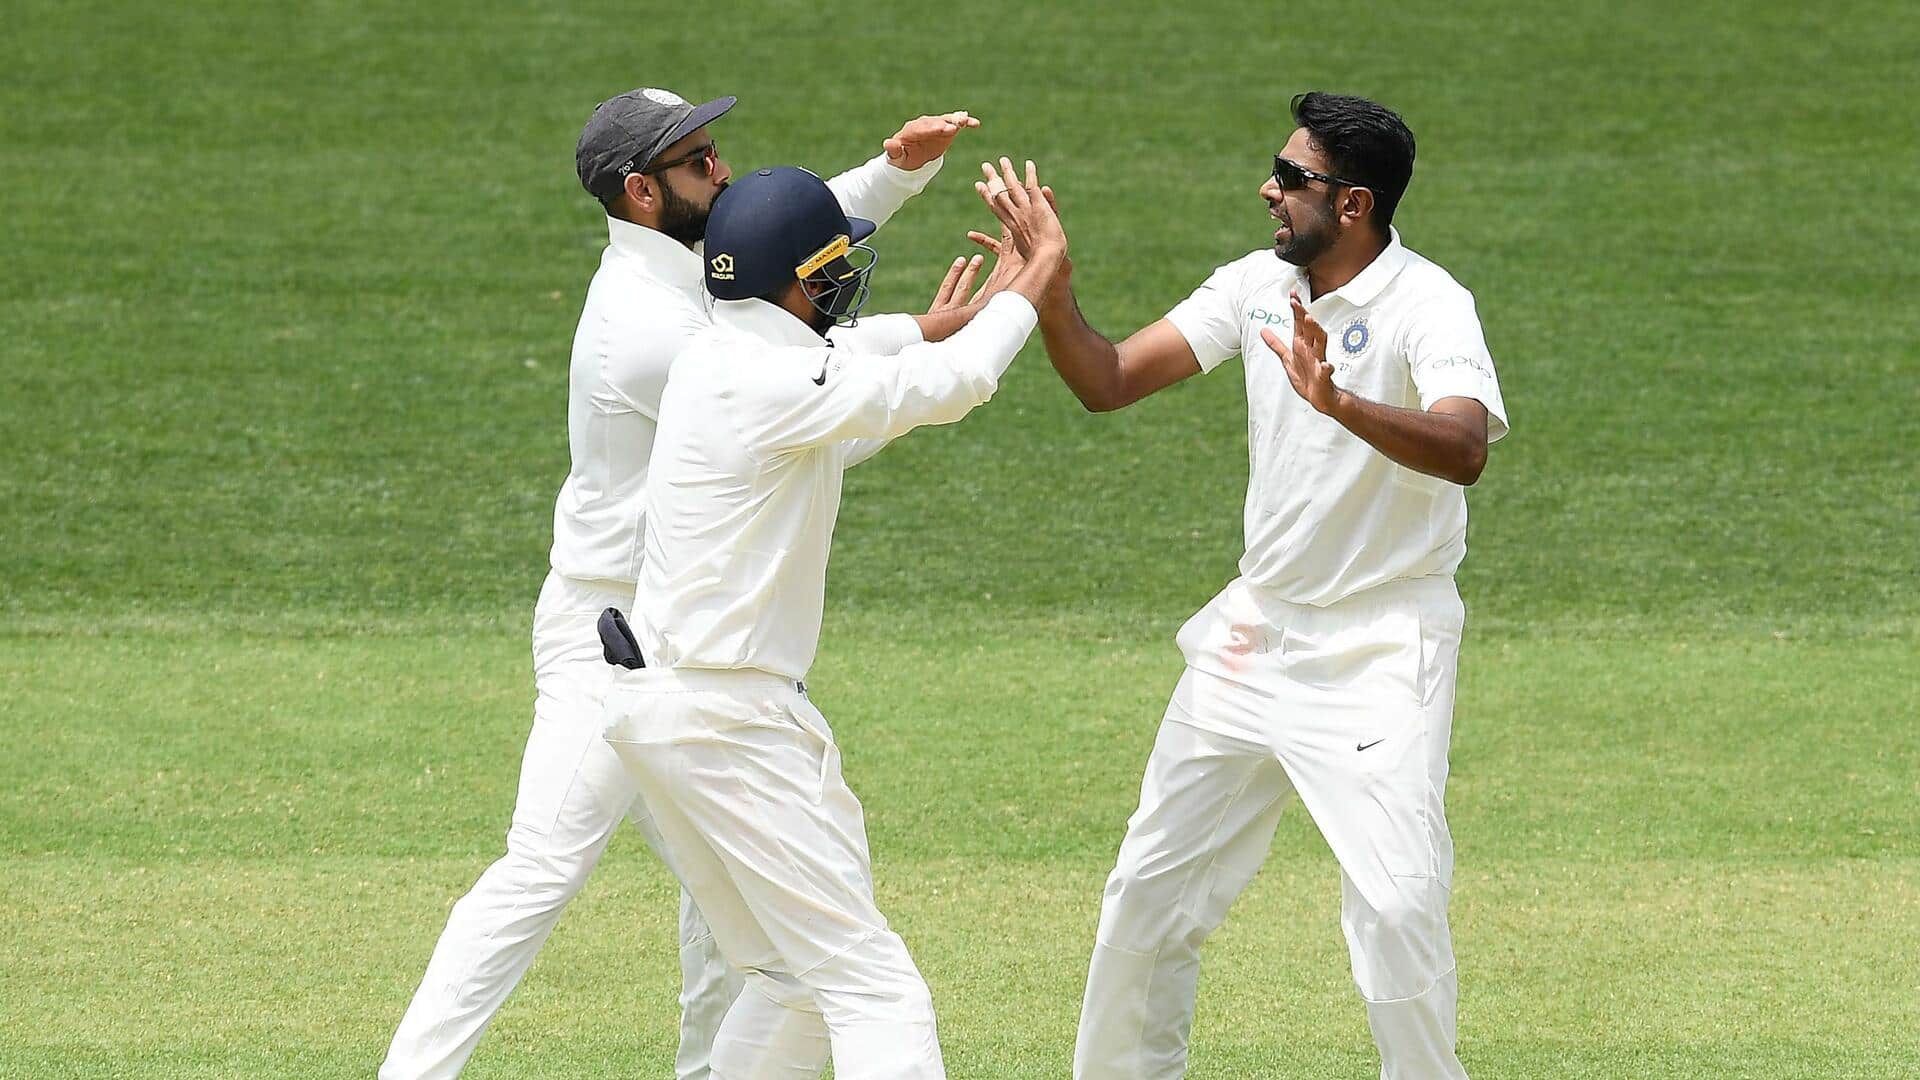 ICC रैंकिंग: रविचंद्रन अश्विन गेंदबाजों में दूसरे स्थान पर पहुंचे, बल्लेबाजों में रोहित को हुआ फायदा